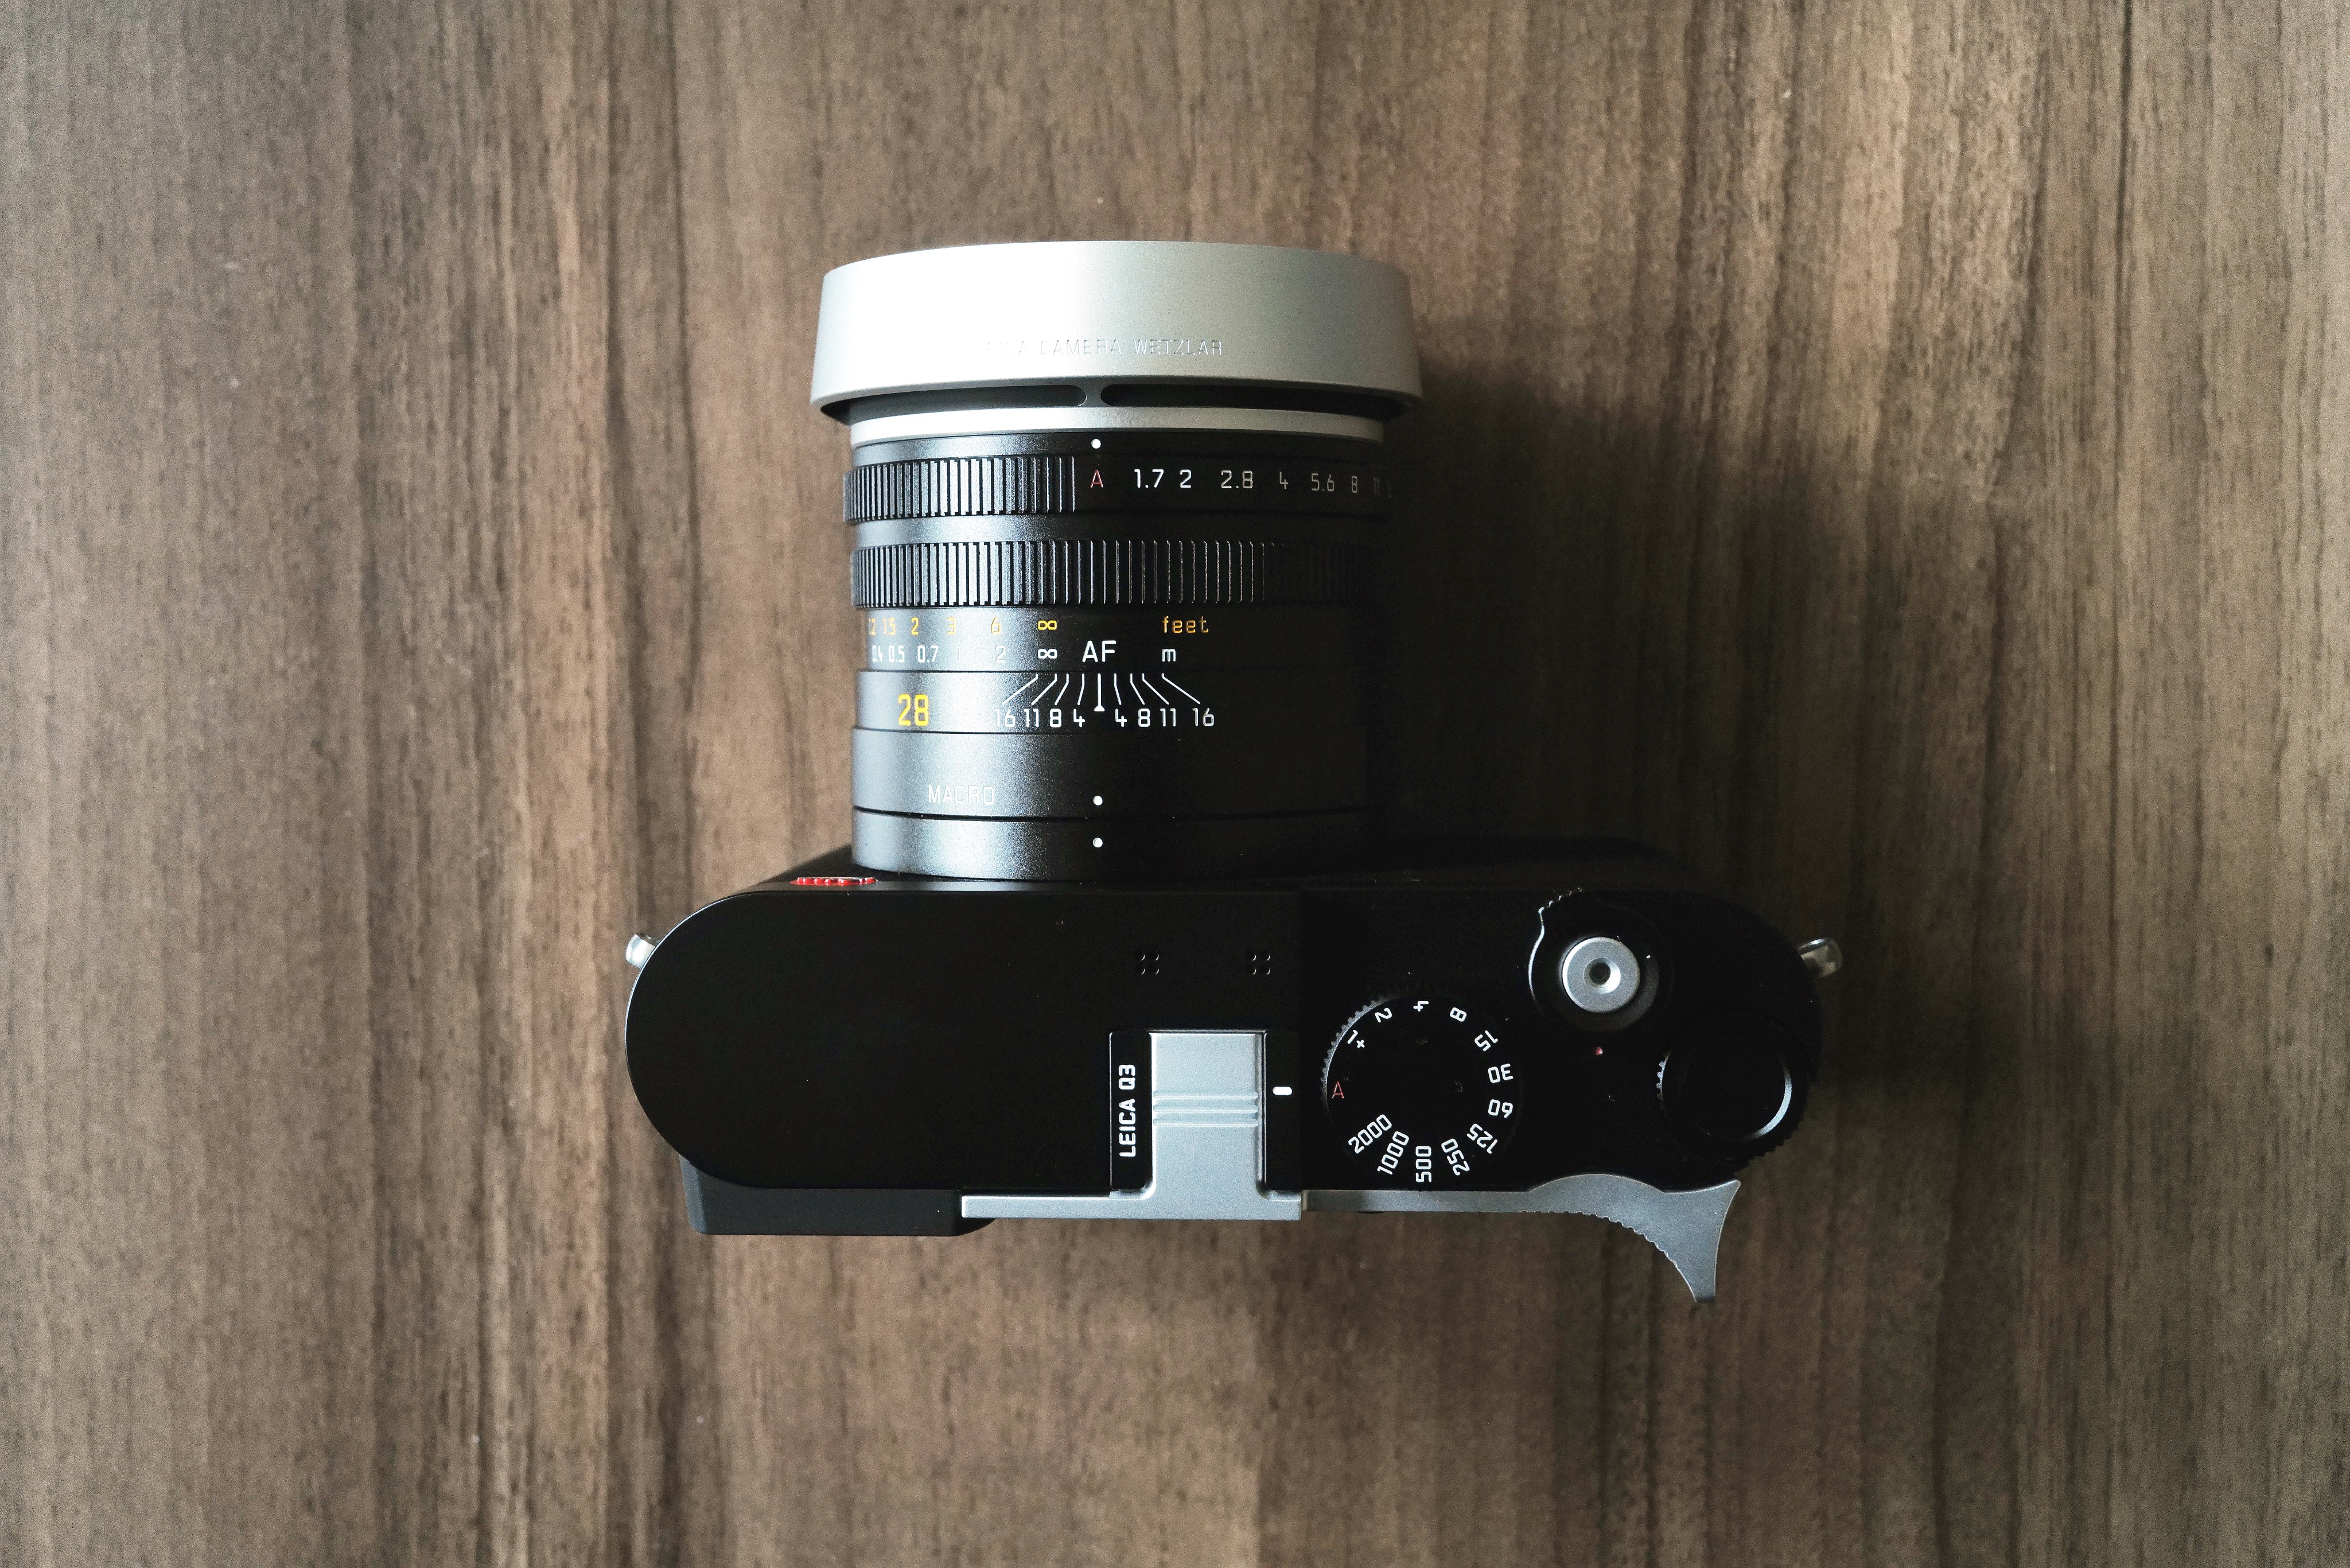 ライカQ3 レンズフード シルバー 試しただけ - デジタルカメラ